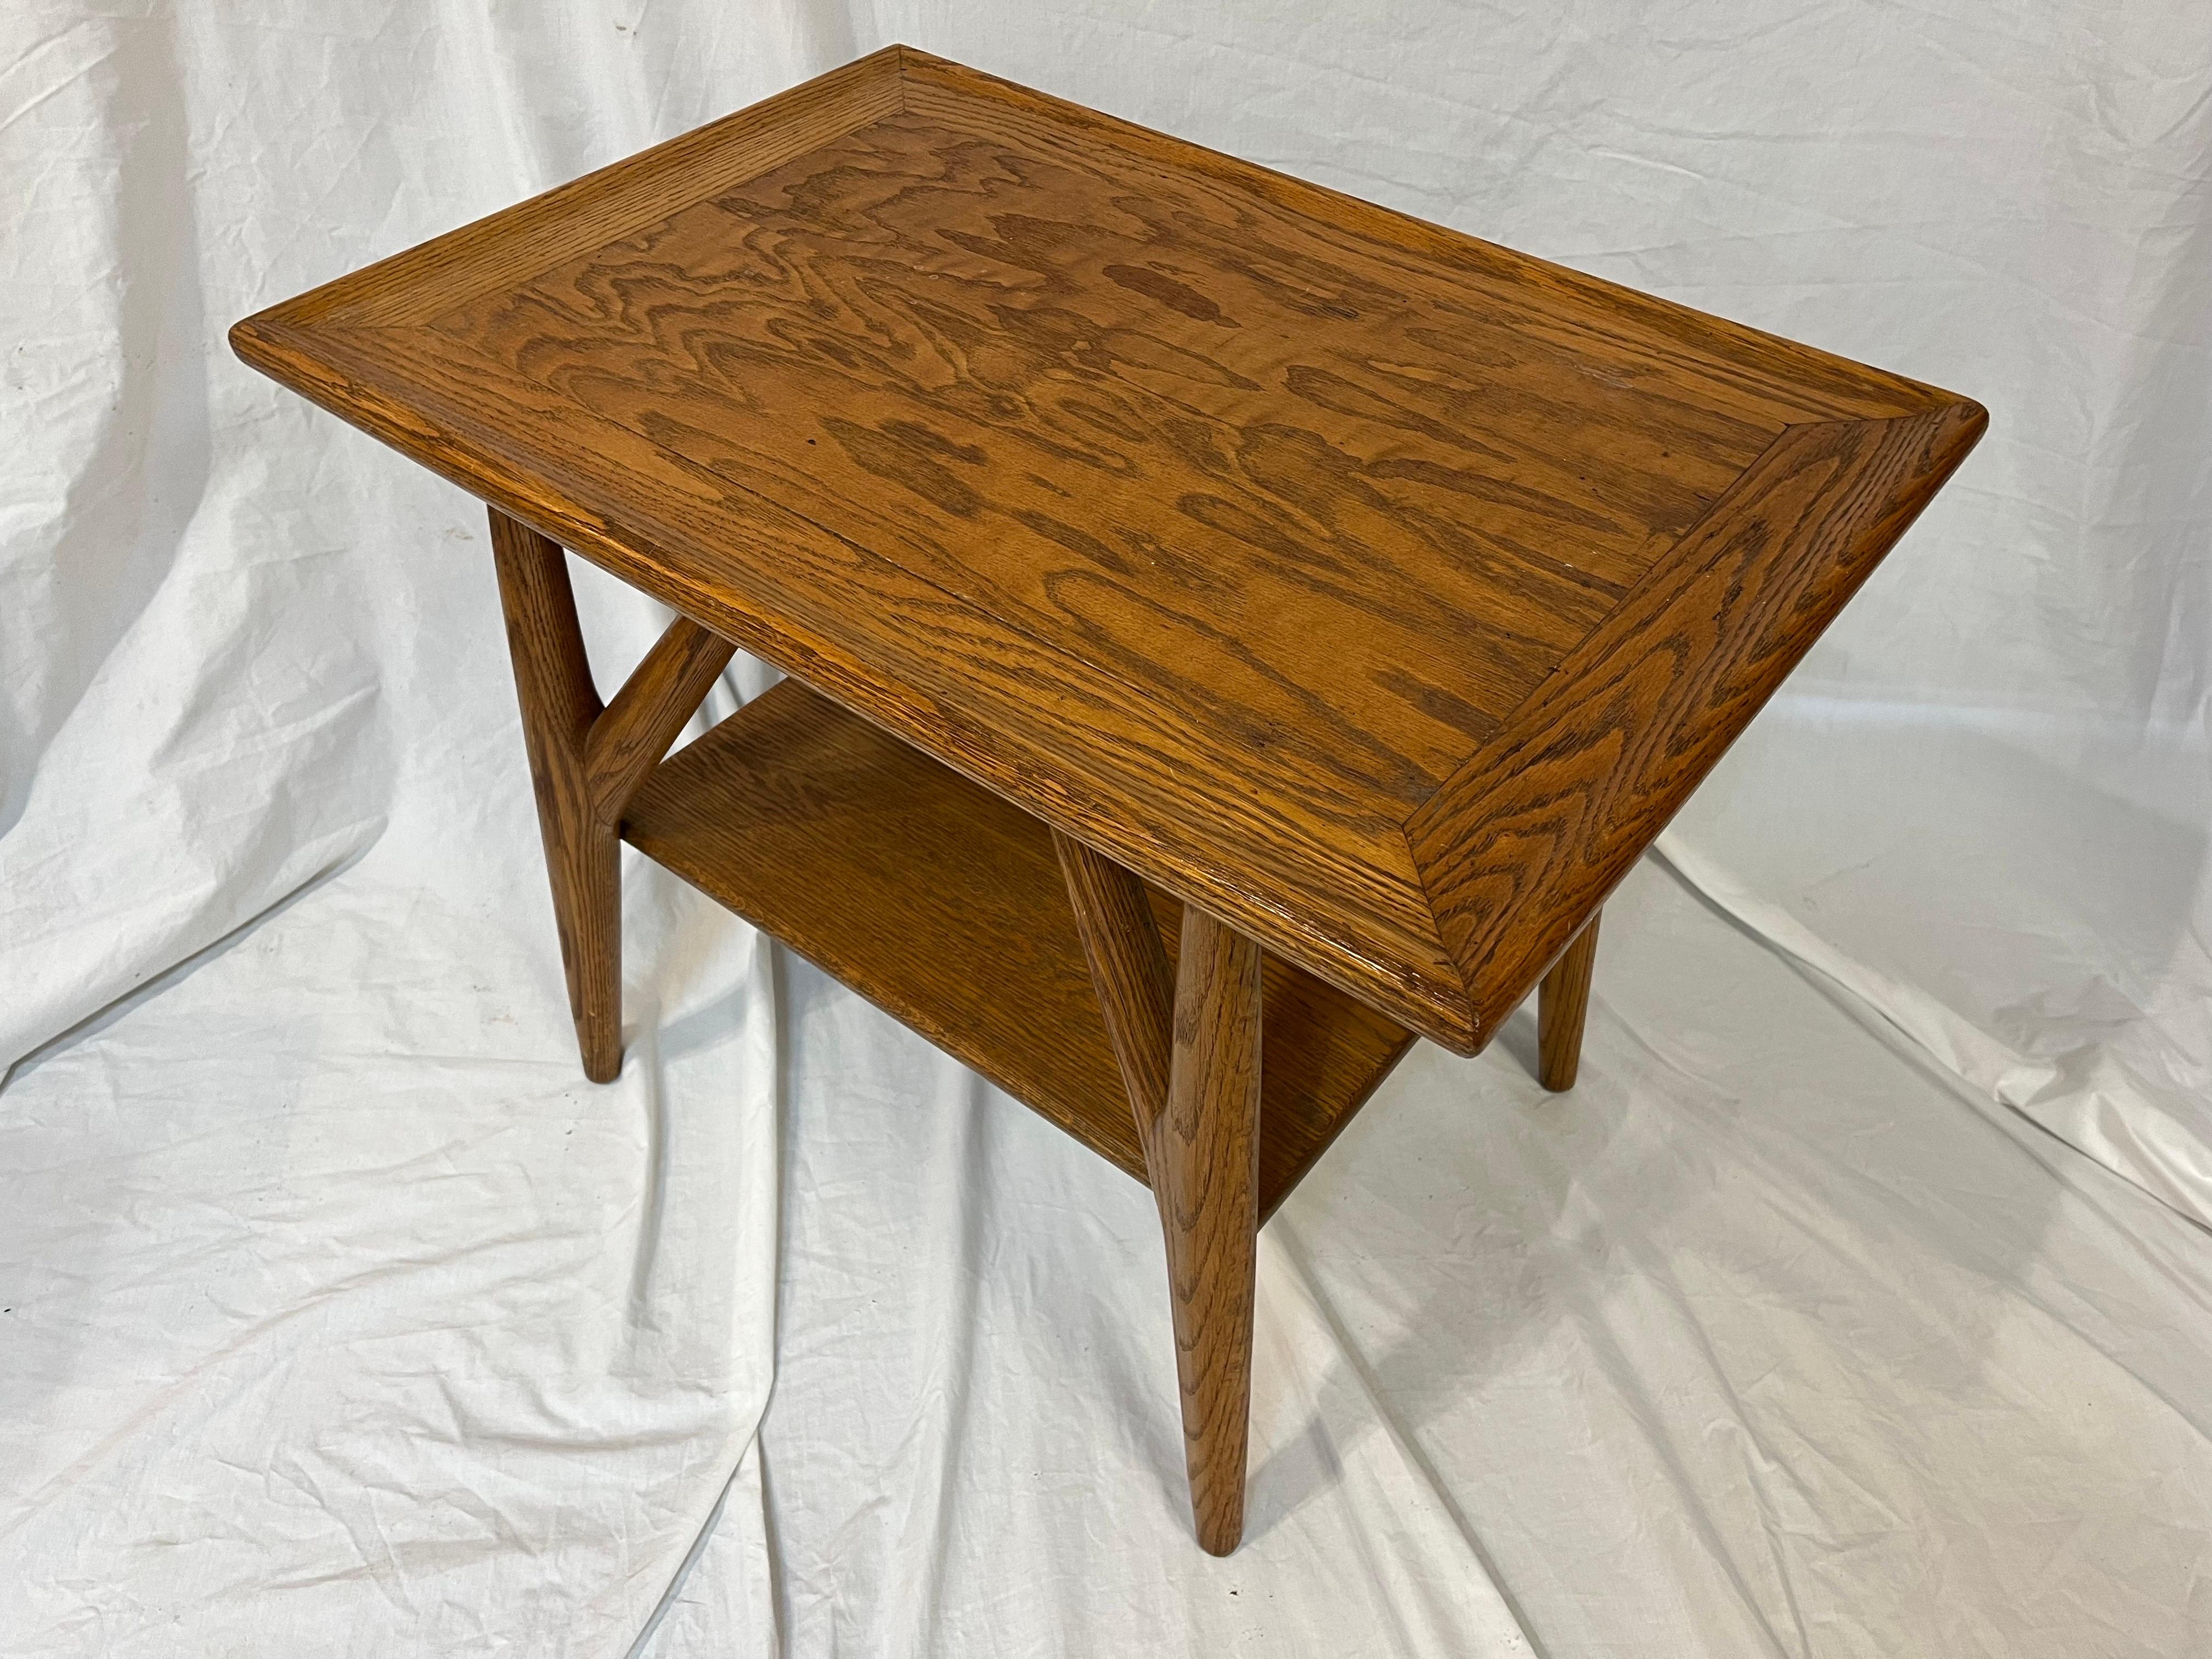 Ein Jack Van der Molen Mid-Century Modern Eichenholz Beistelltisch oder Endtisch. Mit einer starken, ausgeprägten Maserung und einem selbstbewussten Stil ist dieses Stück amerikanischer Designgeschichte bereit für Ihre Einrichtung. Ein paar